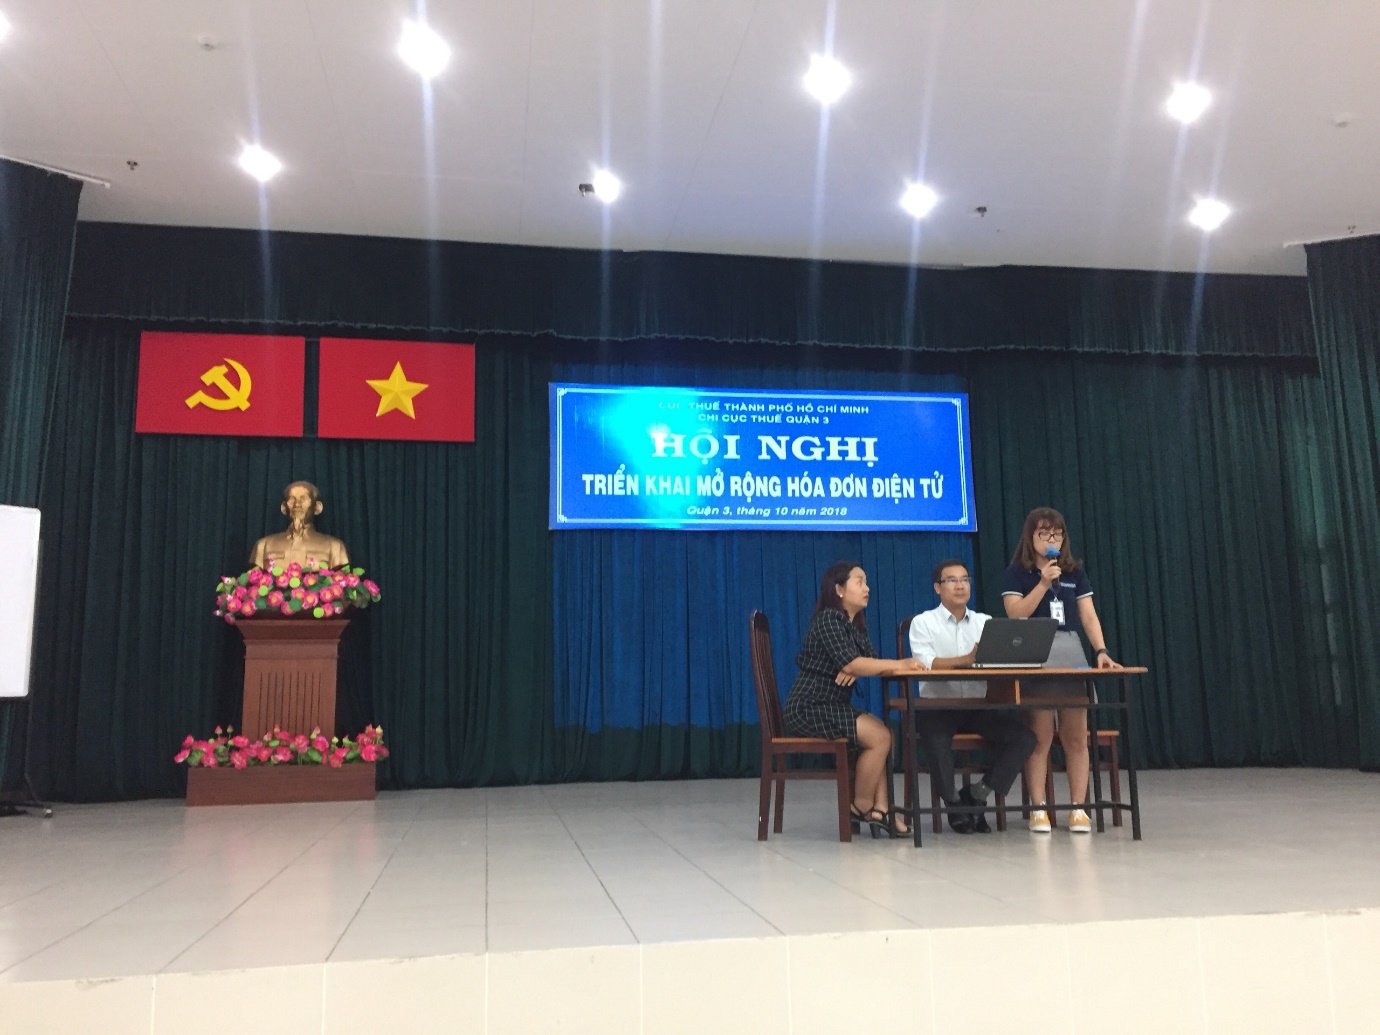 EFY Việt Nam tham dự hội nghị triển khai mở rộng hóa đơn điện tử tại Quận 3- TP Hồ Chí Minh- ảnh 1